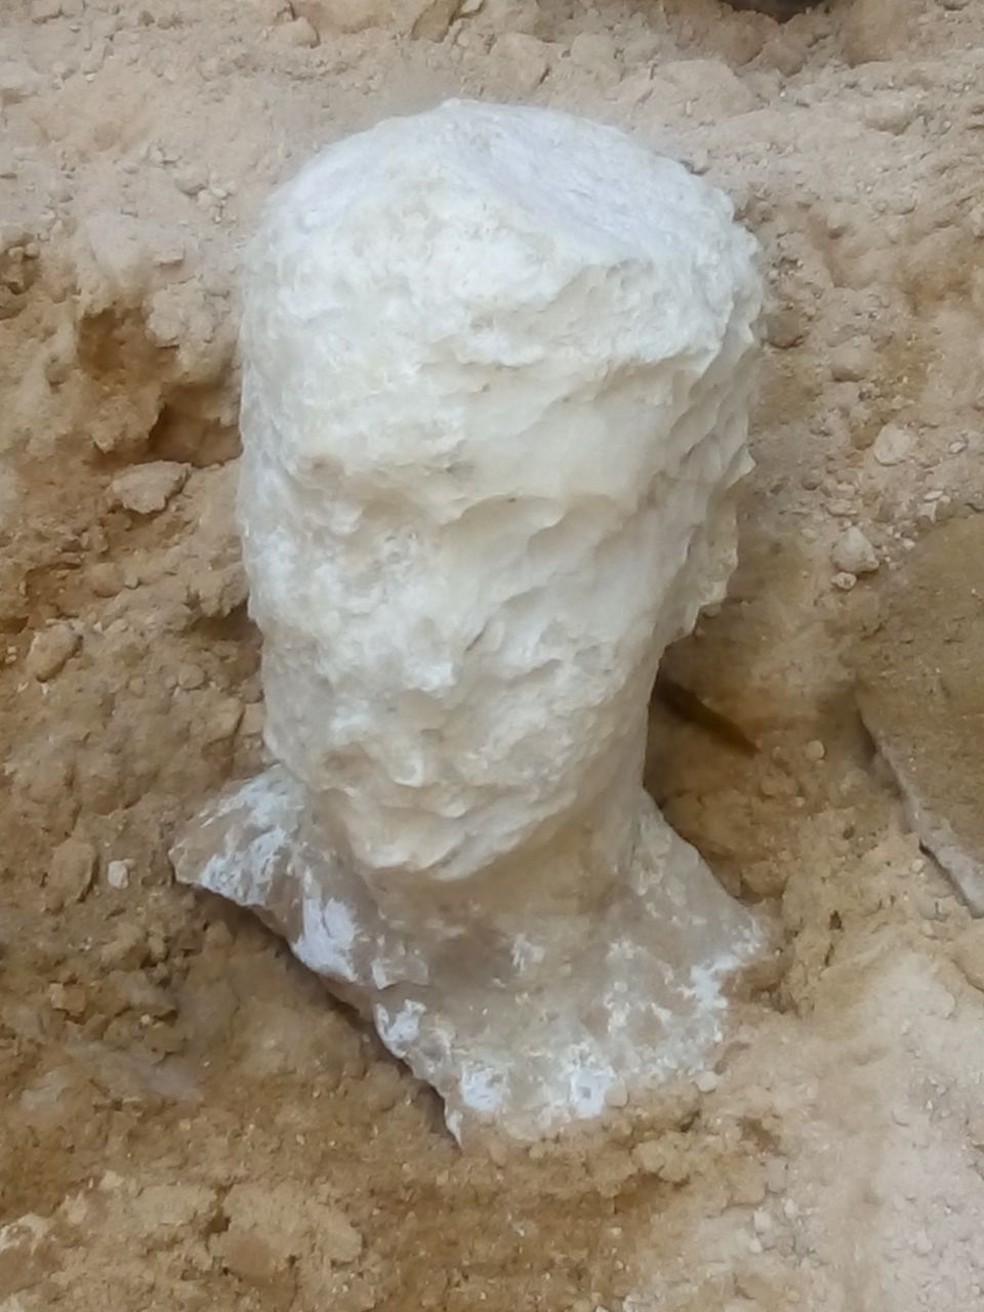  Foto divulgada em 1º de julho mostra a ‘cabeça’ de um homem encontrada em um túmulo antigo que remonta a dinastia ptolemaica (Foto: Ministério de Antiguidades do Egito/AFP)